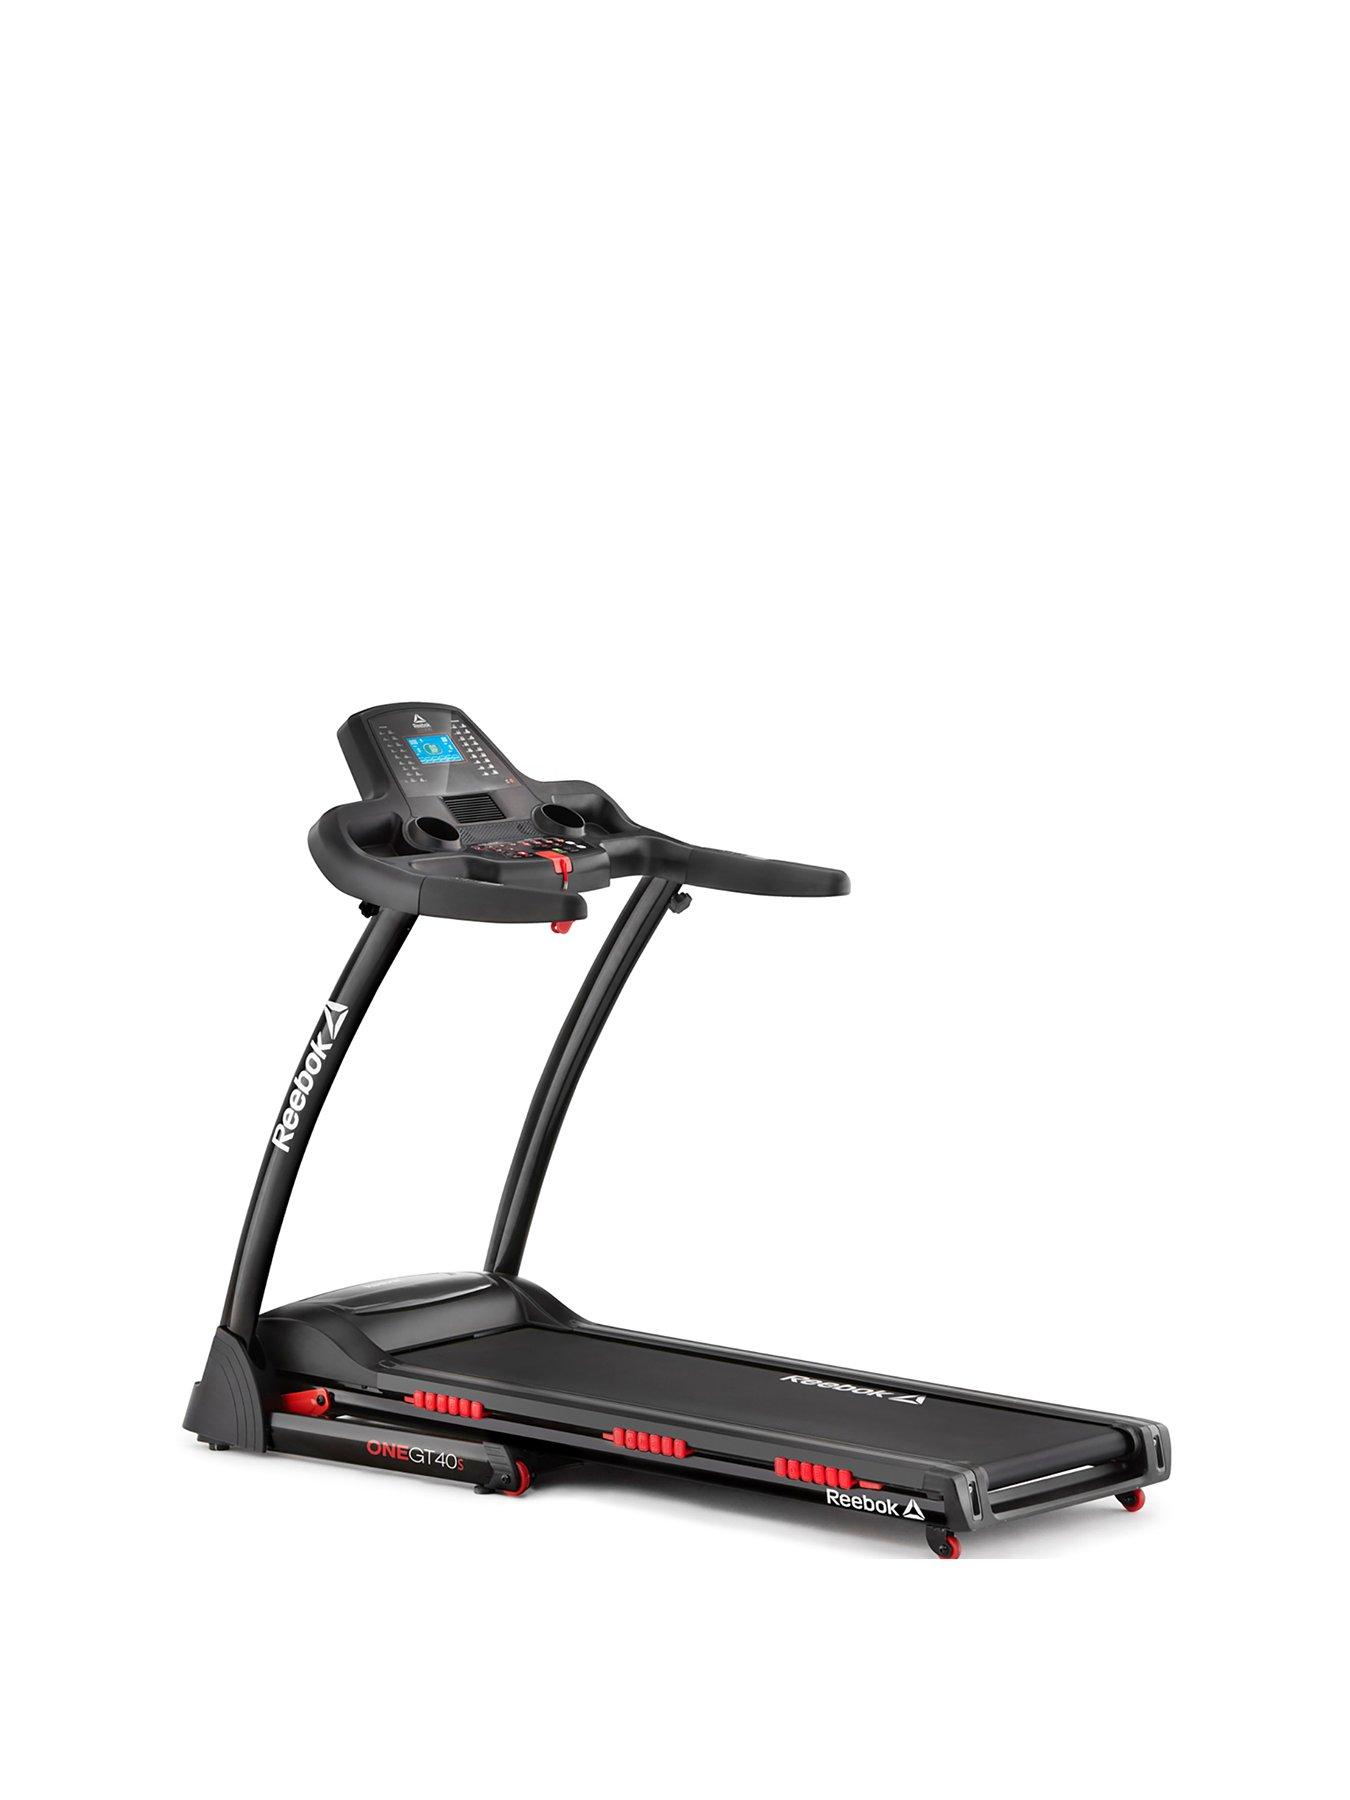 treadmill reebok gt40